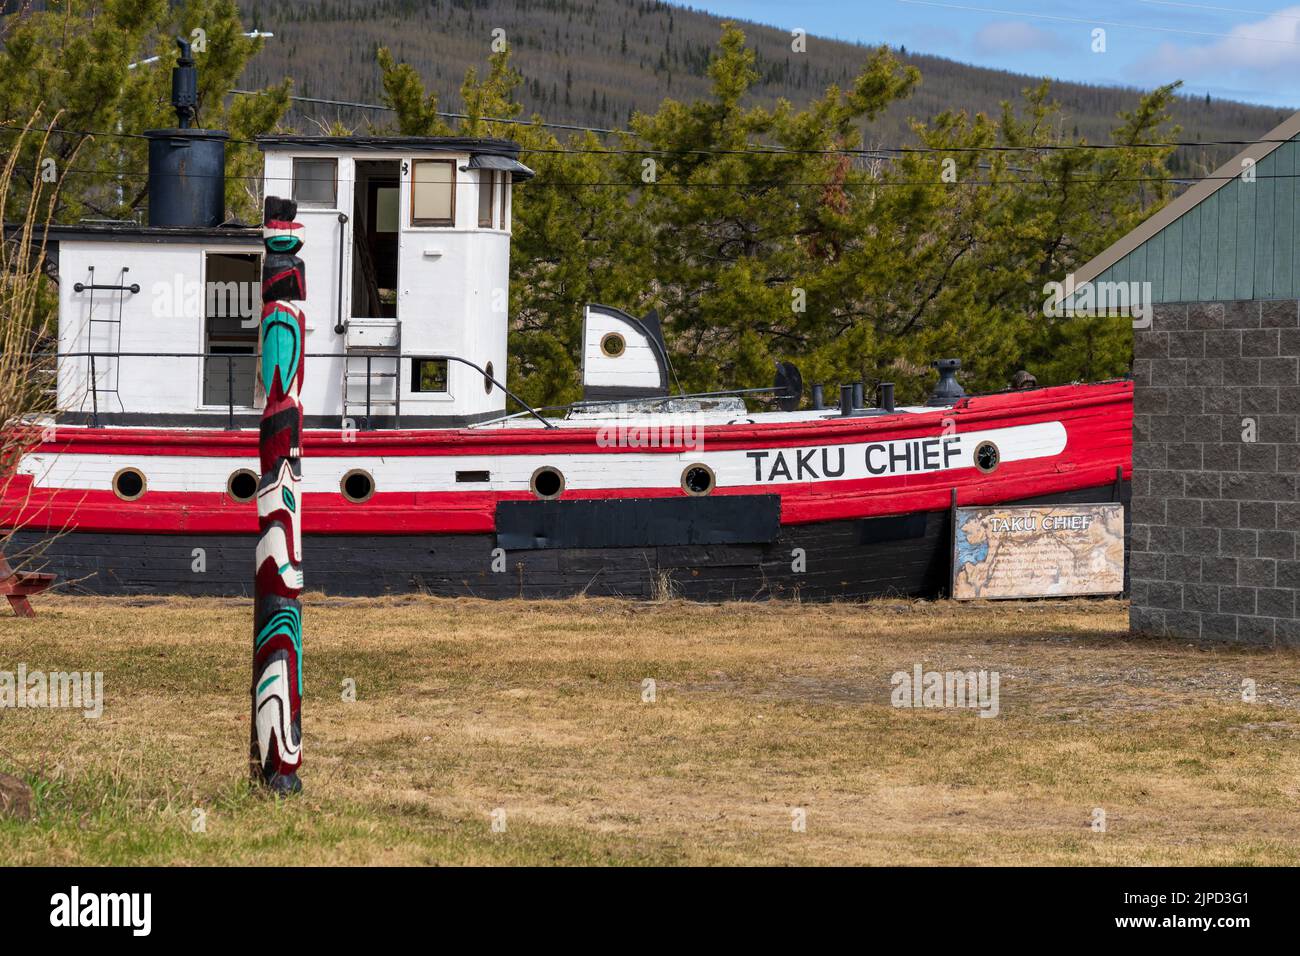 Le chef Taku était le dernier bateau à vapeur à Fairbanks.before ans, il a pris sa retraite à Neana, en Alaska Banque D'Images